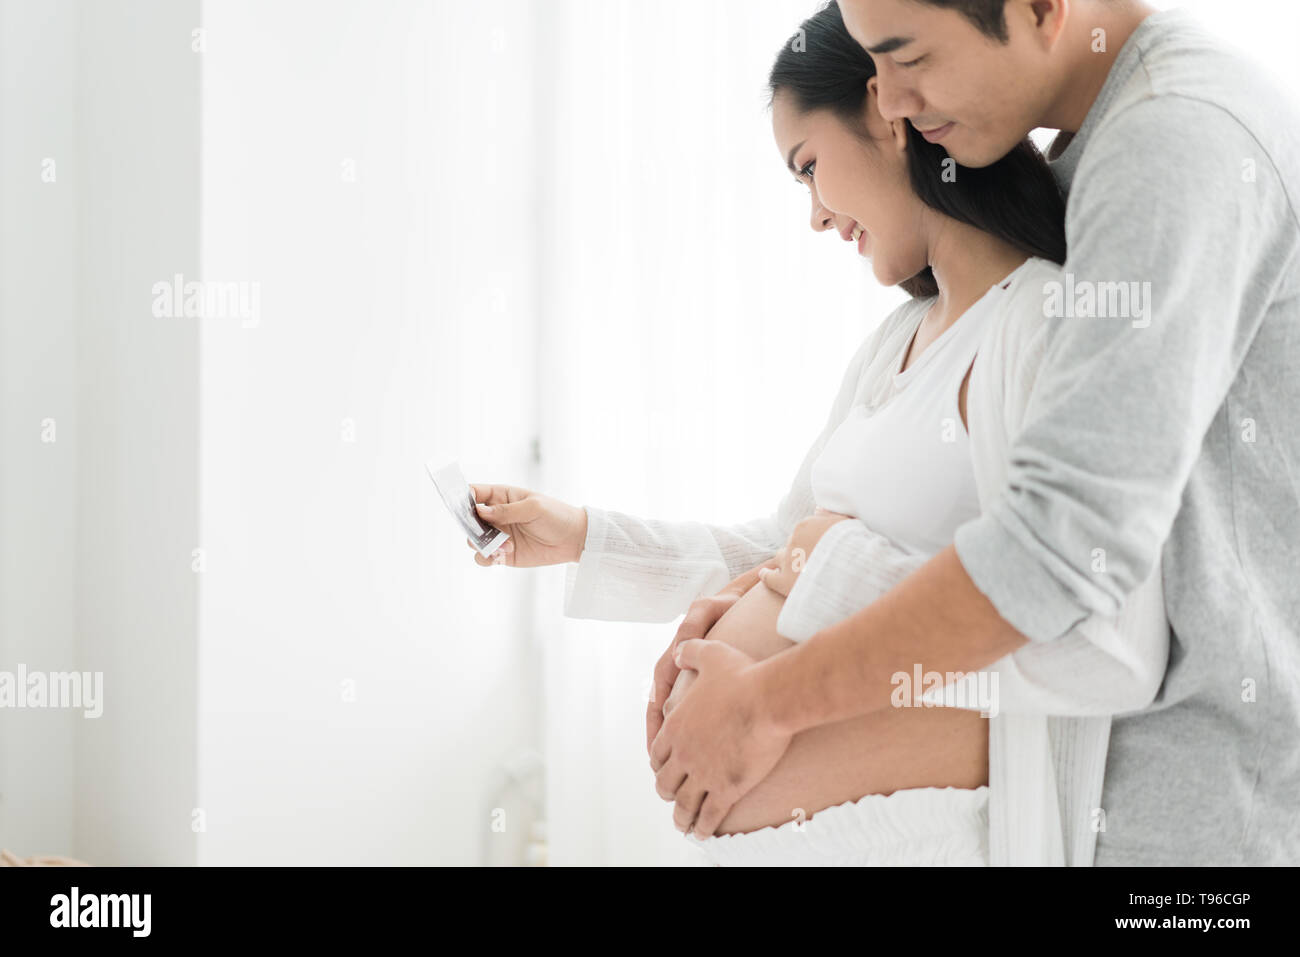 Schöne Asiatische schwangere Frau und Asiatischen gutaussehenden Mann Holding und suchen ein sonogramm im Haus. Konzept der Schwangerschaft, Gesundheit, Gynäkologie, medi Stockfoto